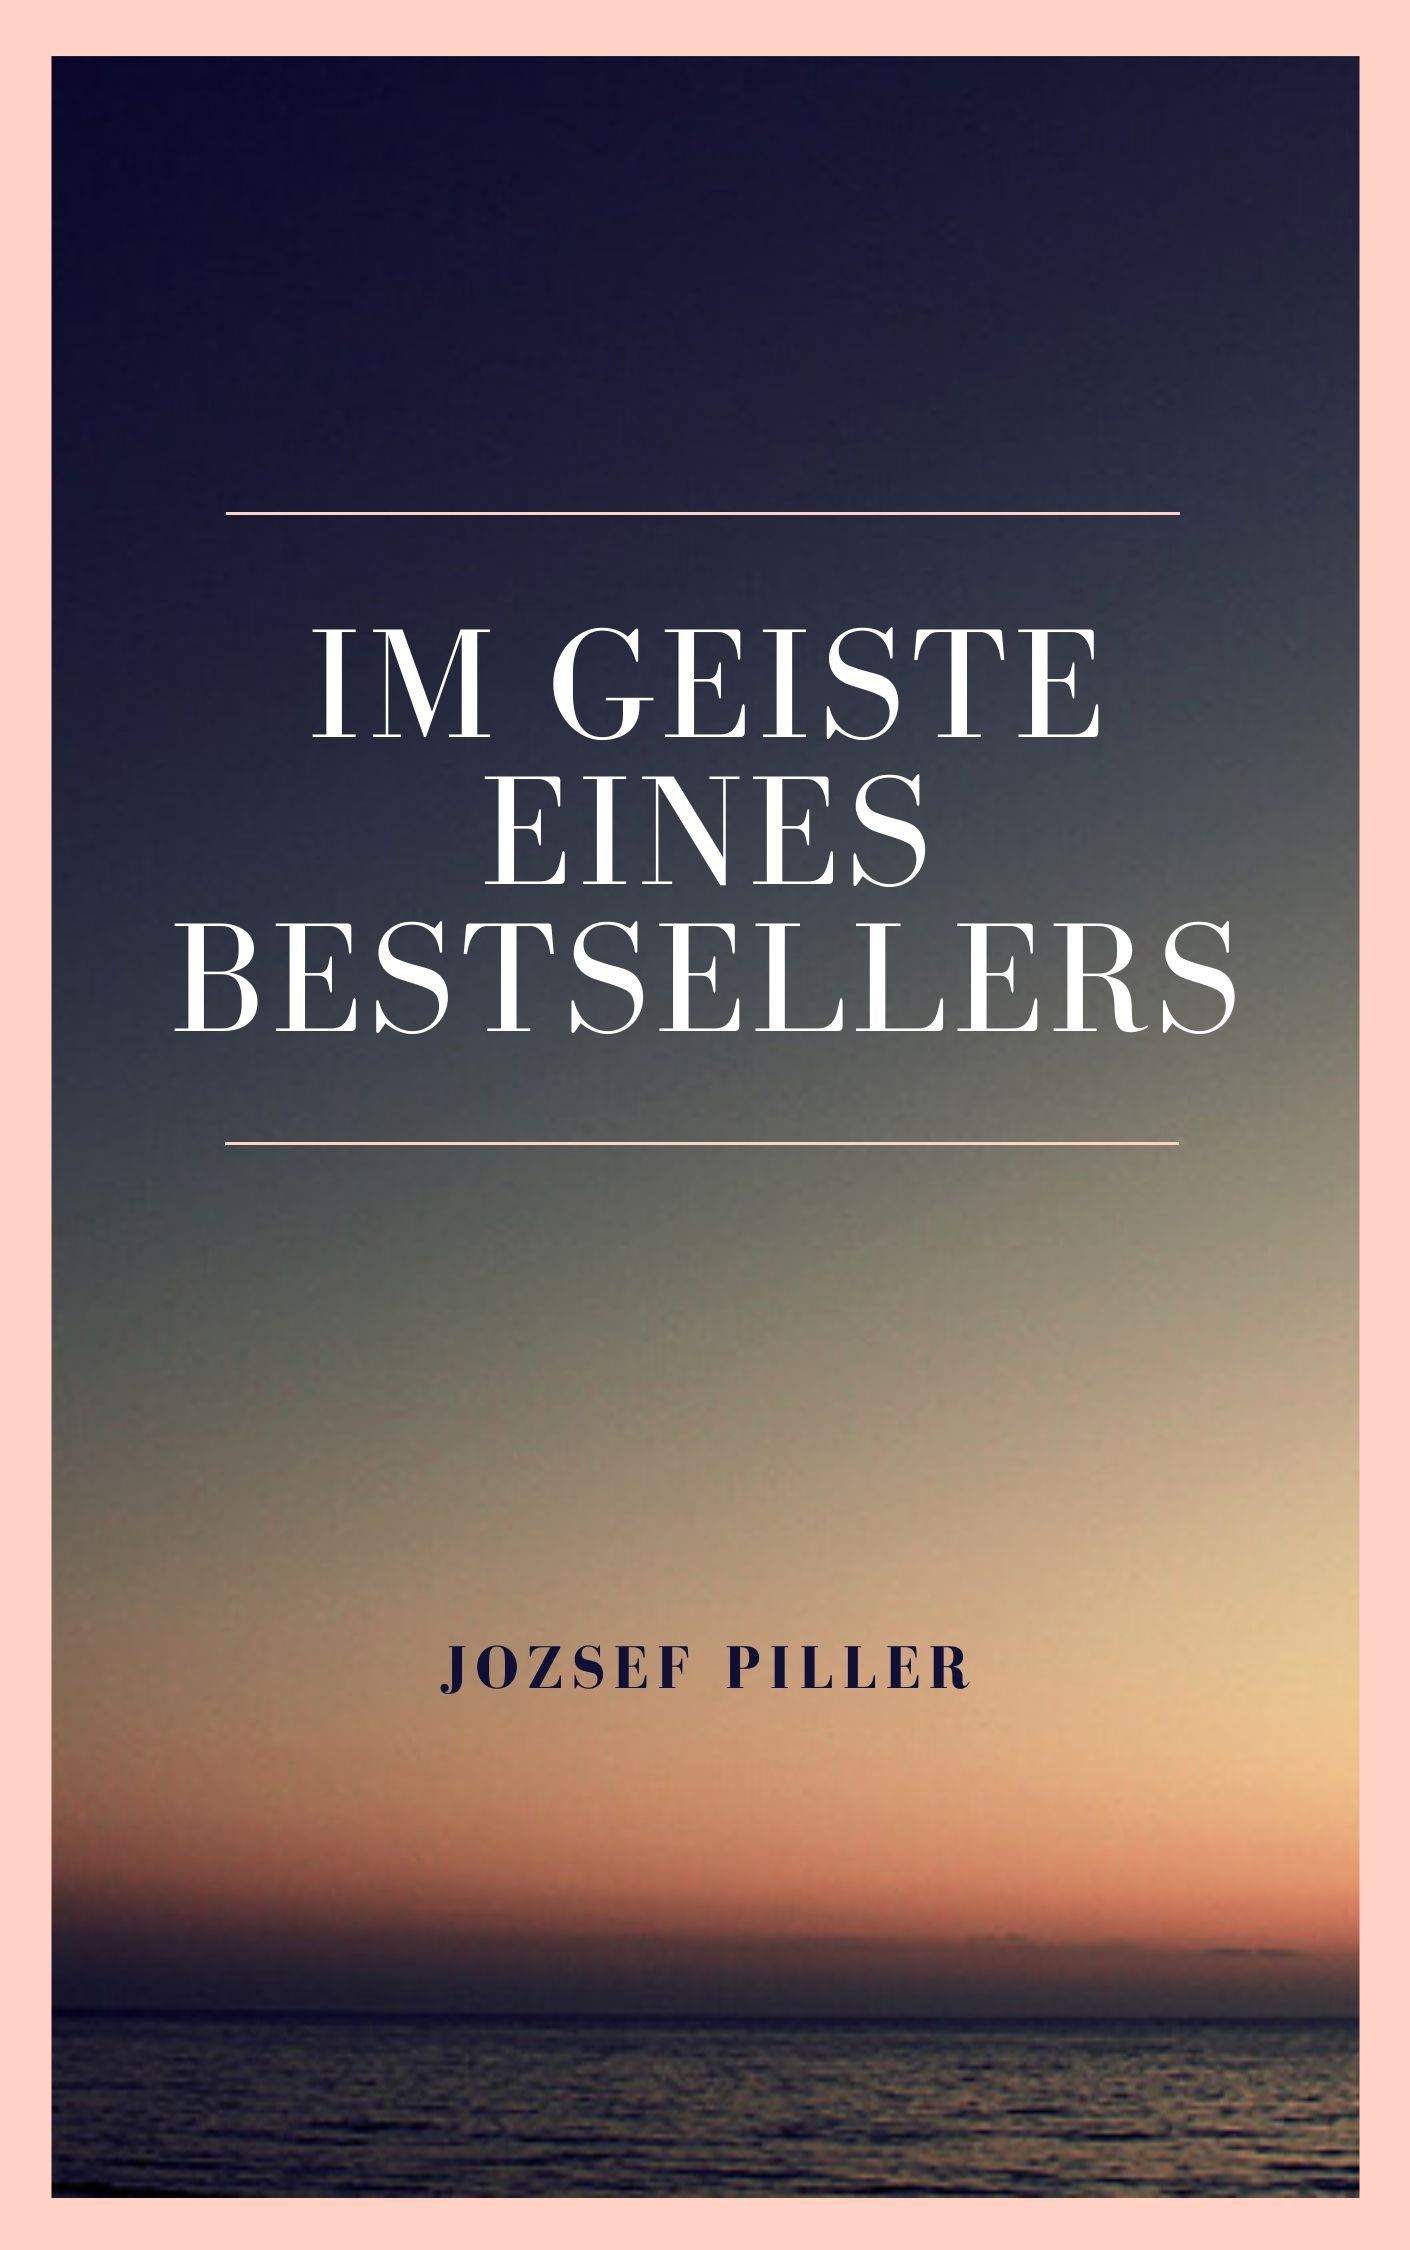 Im Geiste eines Bestsellers, e-bog af Jozsef Piller